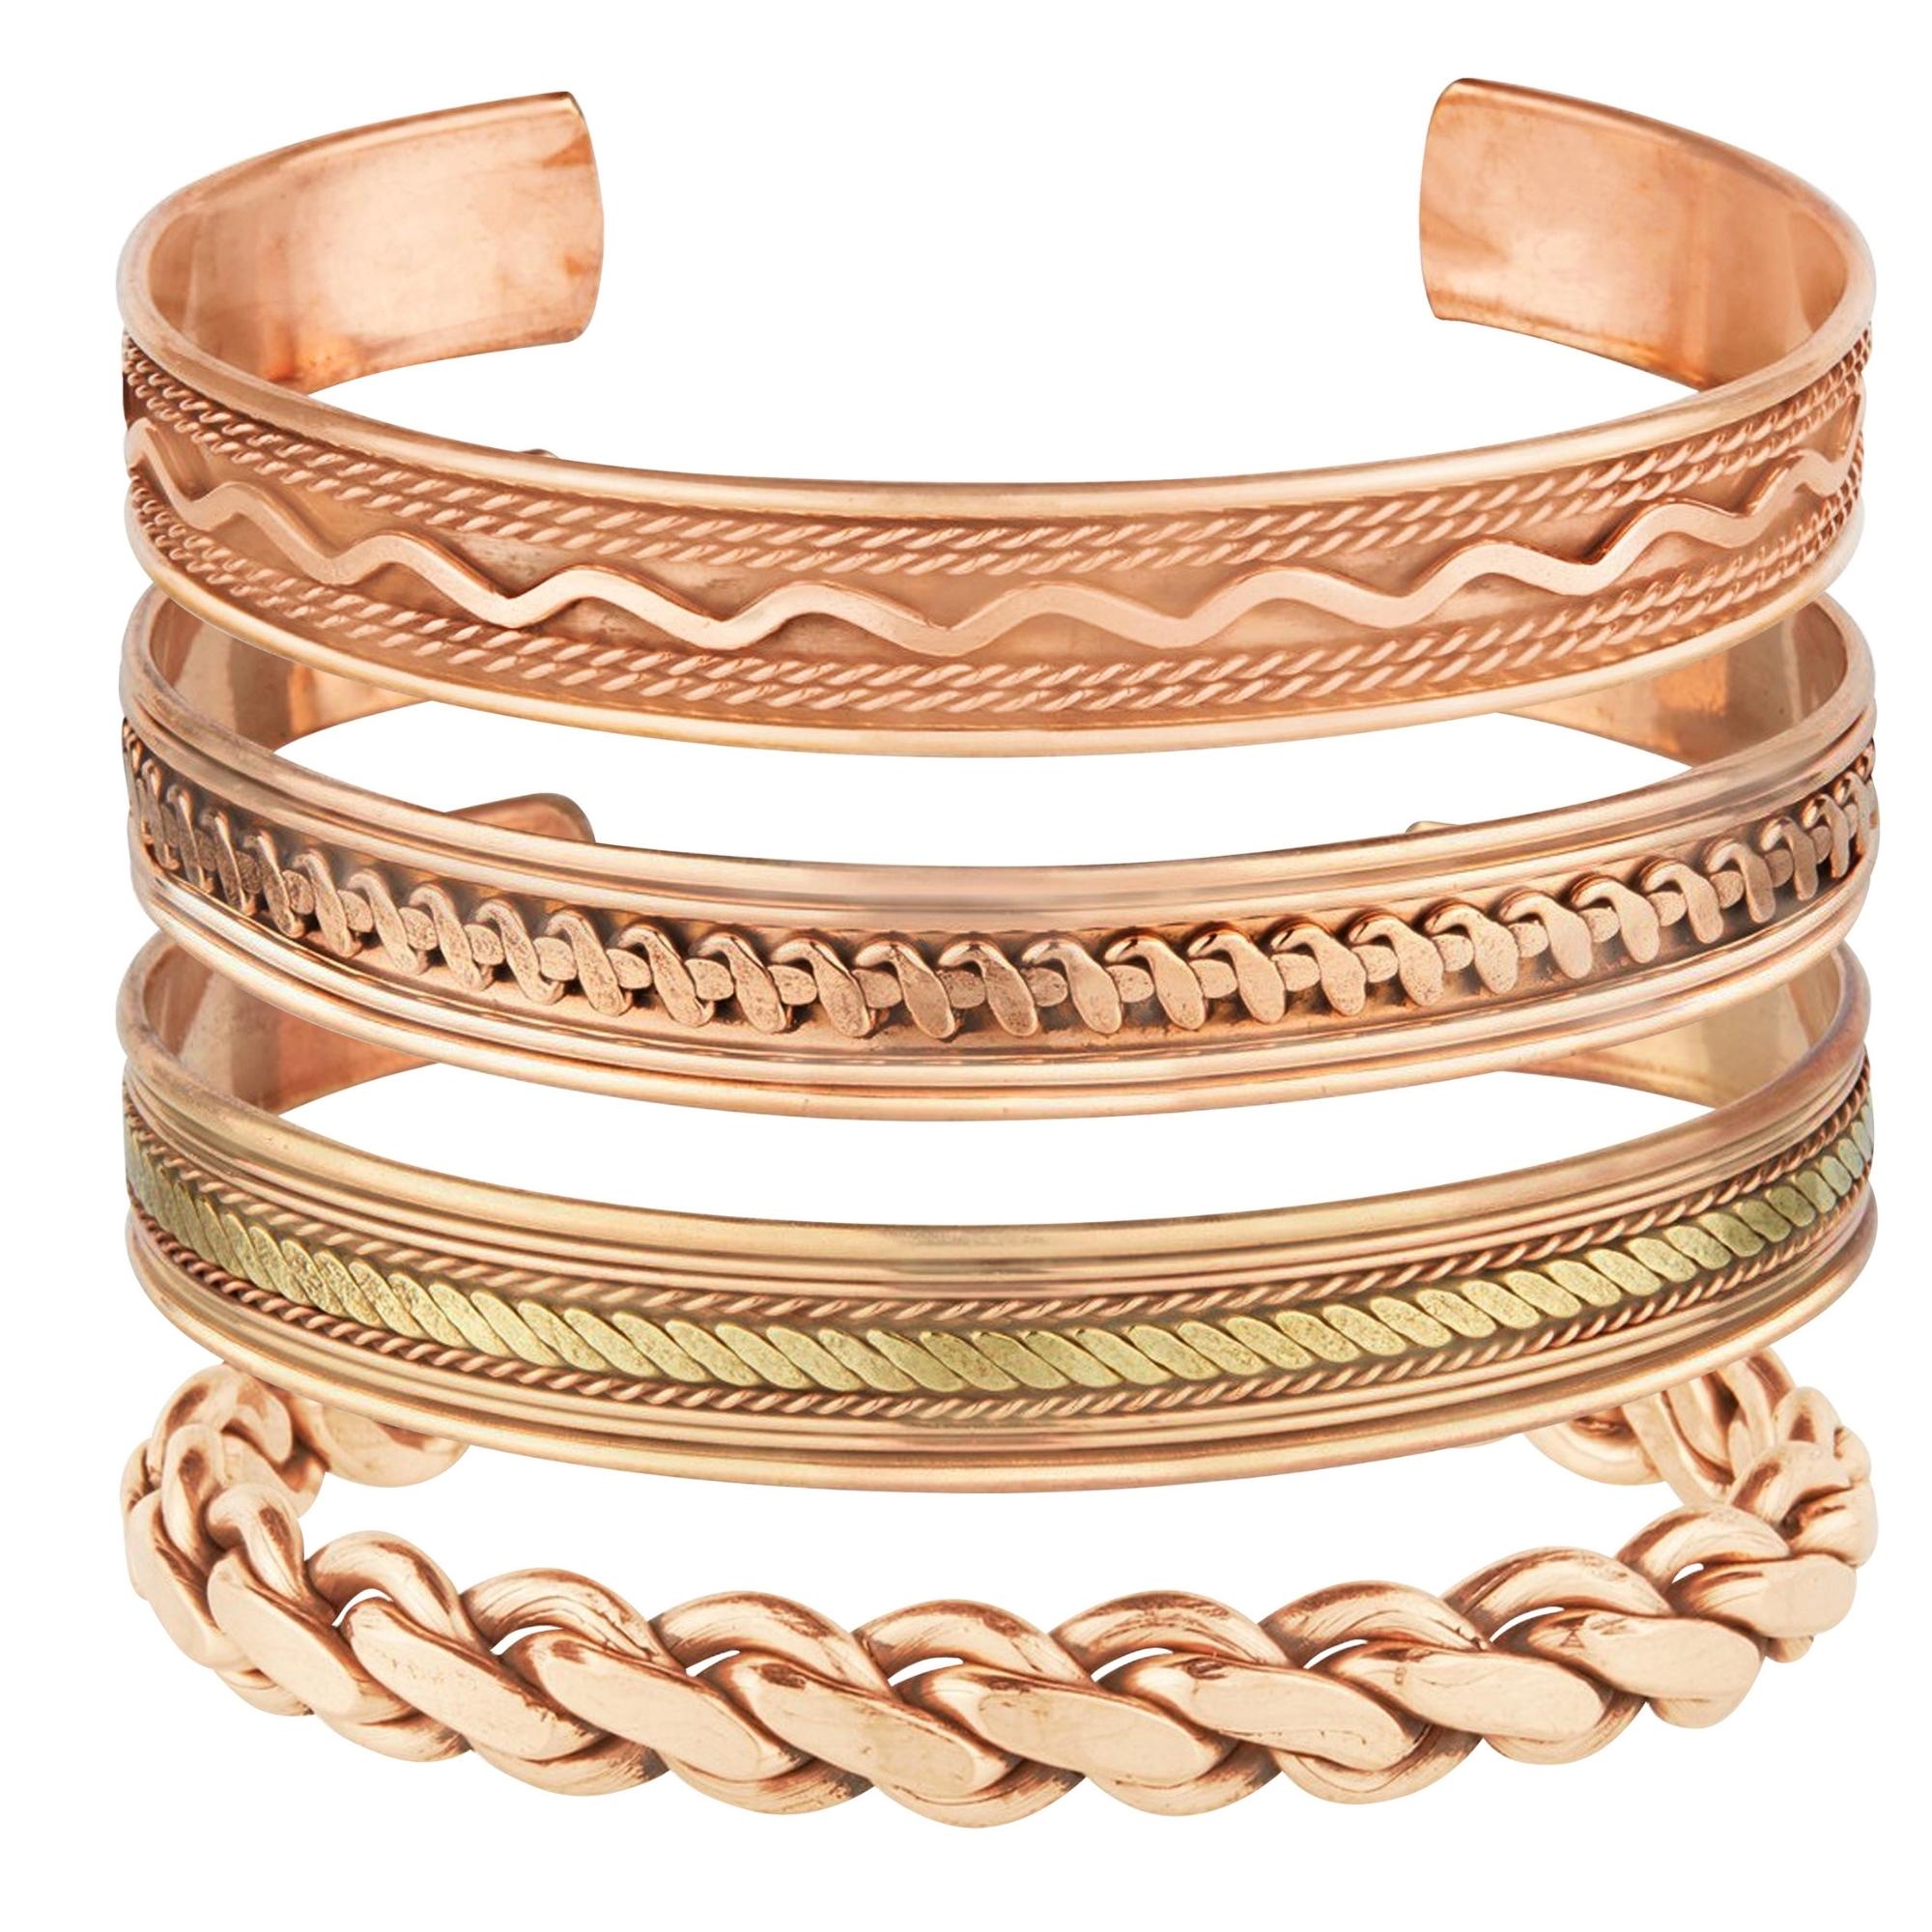 Twist Cuffed Copper Bracelet MEN WOMEN | eBay